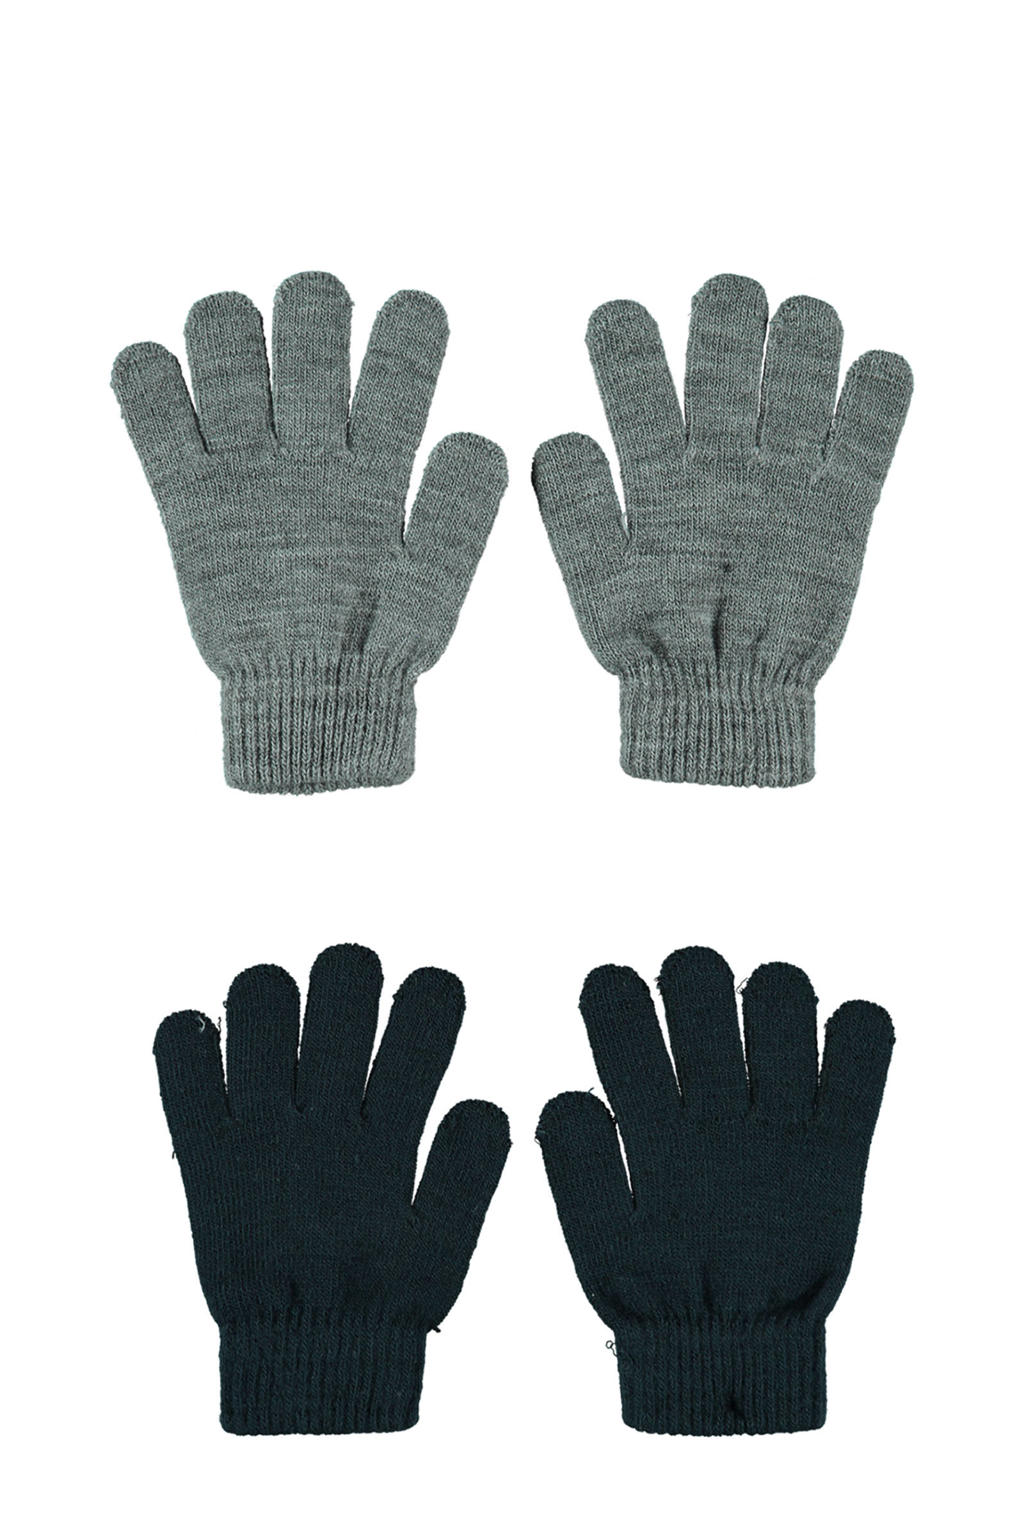 Sarlini handschoenen - set van 2 grijs/donkerblauw